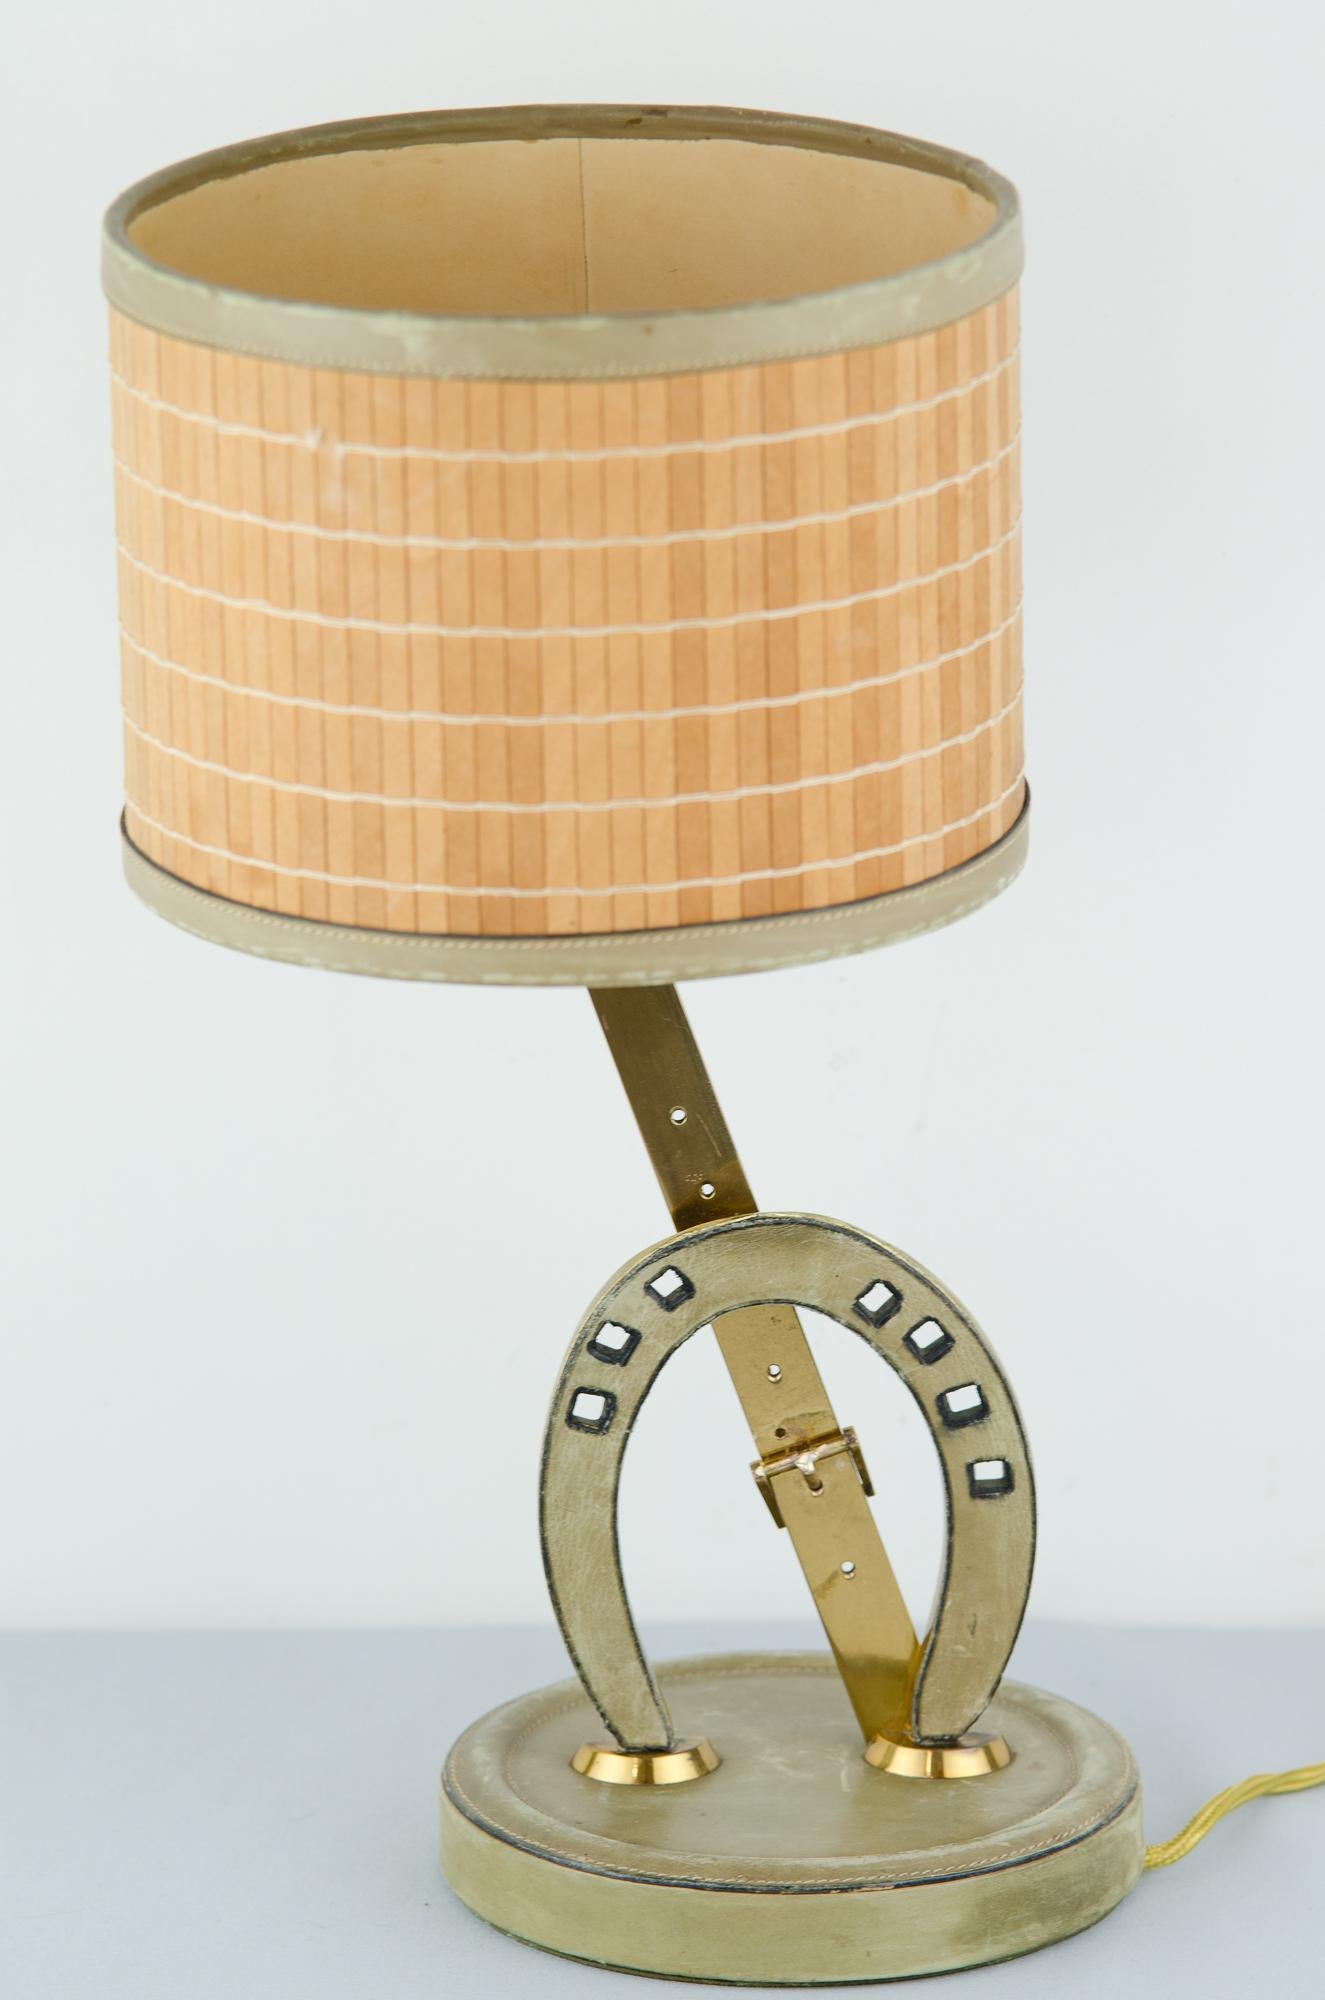 Tischlampe, ca. 1960er Jahre.
Messing und Leder
Original Farbton
Ursprünglicher Zustand.